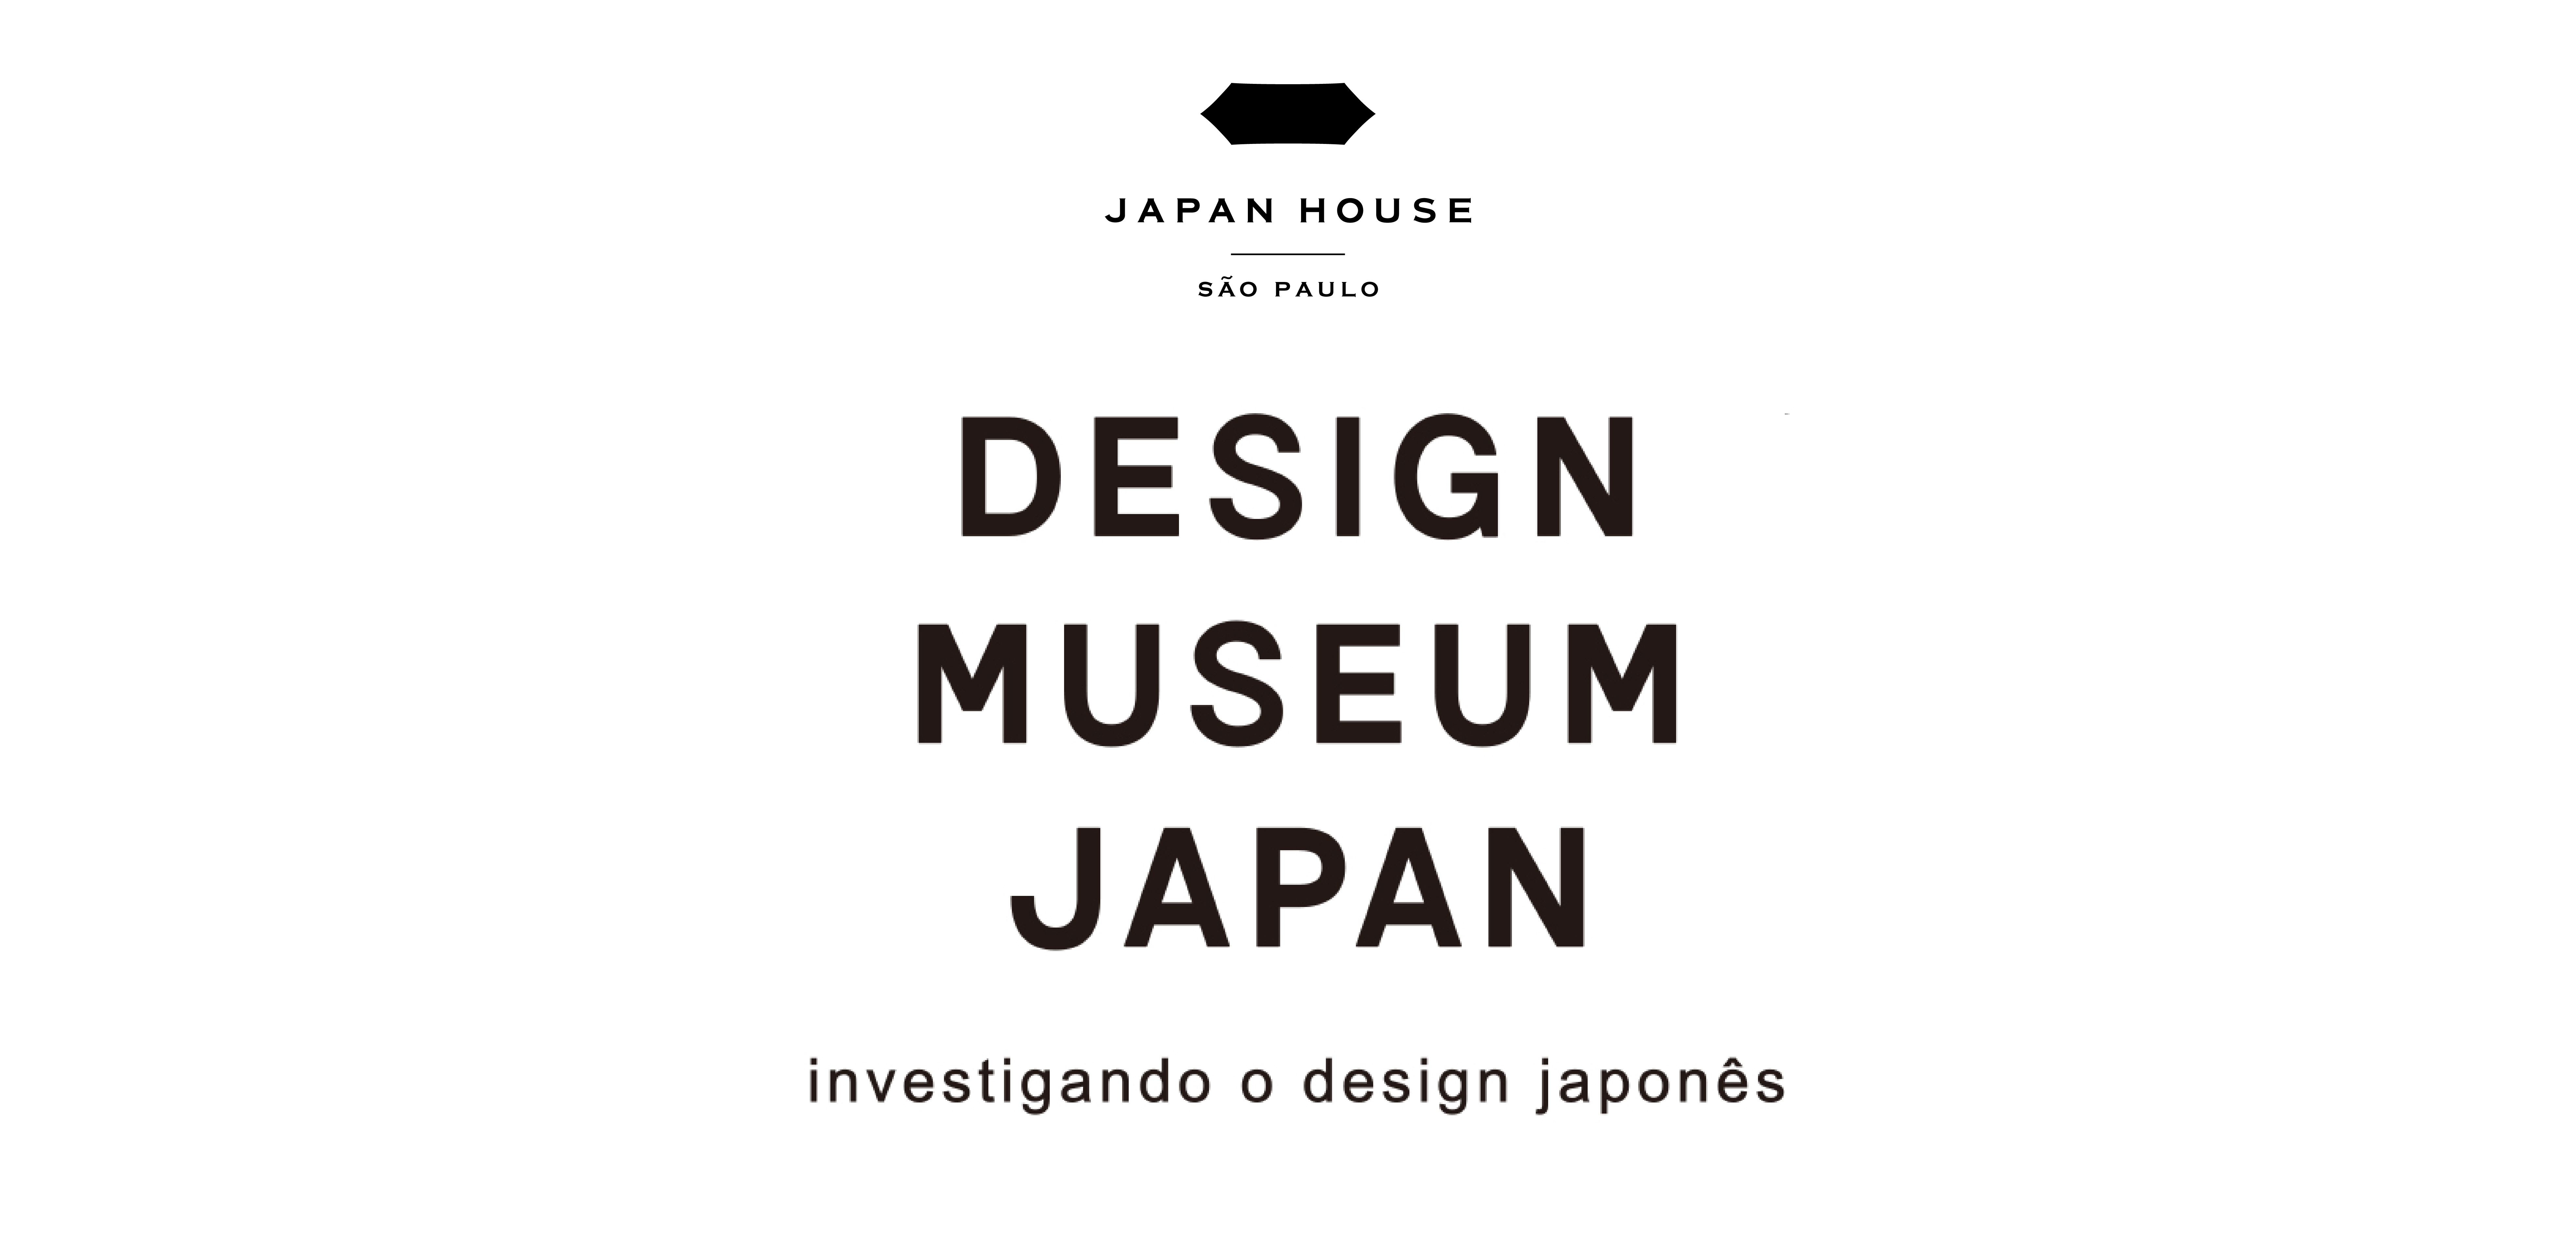 No logotipo da exposição, as palavras estão escritas em letras de forma e maiúsculas. Estão na área central, em cor preta: a palavra “Design” está no topo, “Museum” no meio e “Japan” na parte inferior. Logo abaixo, em uma única linha, o subtítulo: “Investigando o design japonês”. Acima, logotipo da Japan House São Paulo.